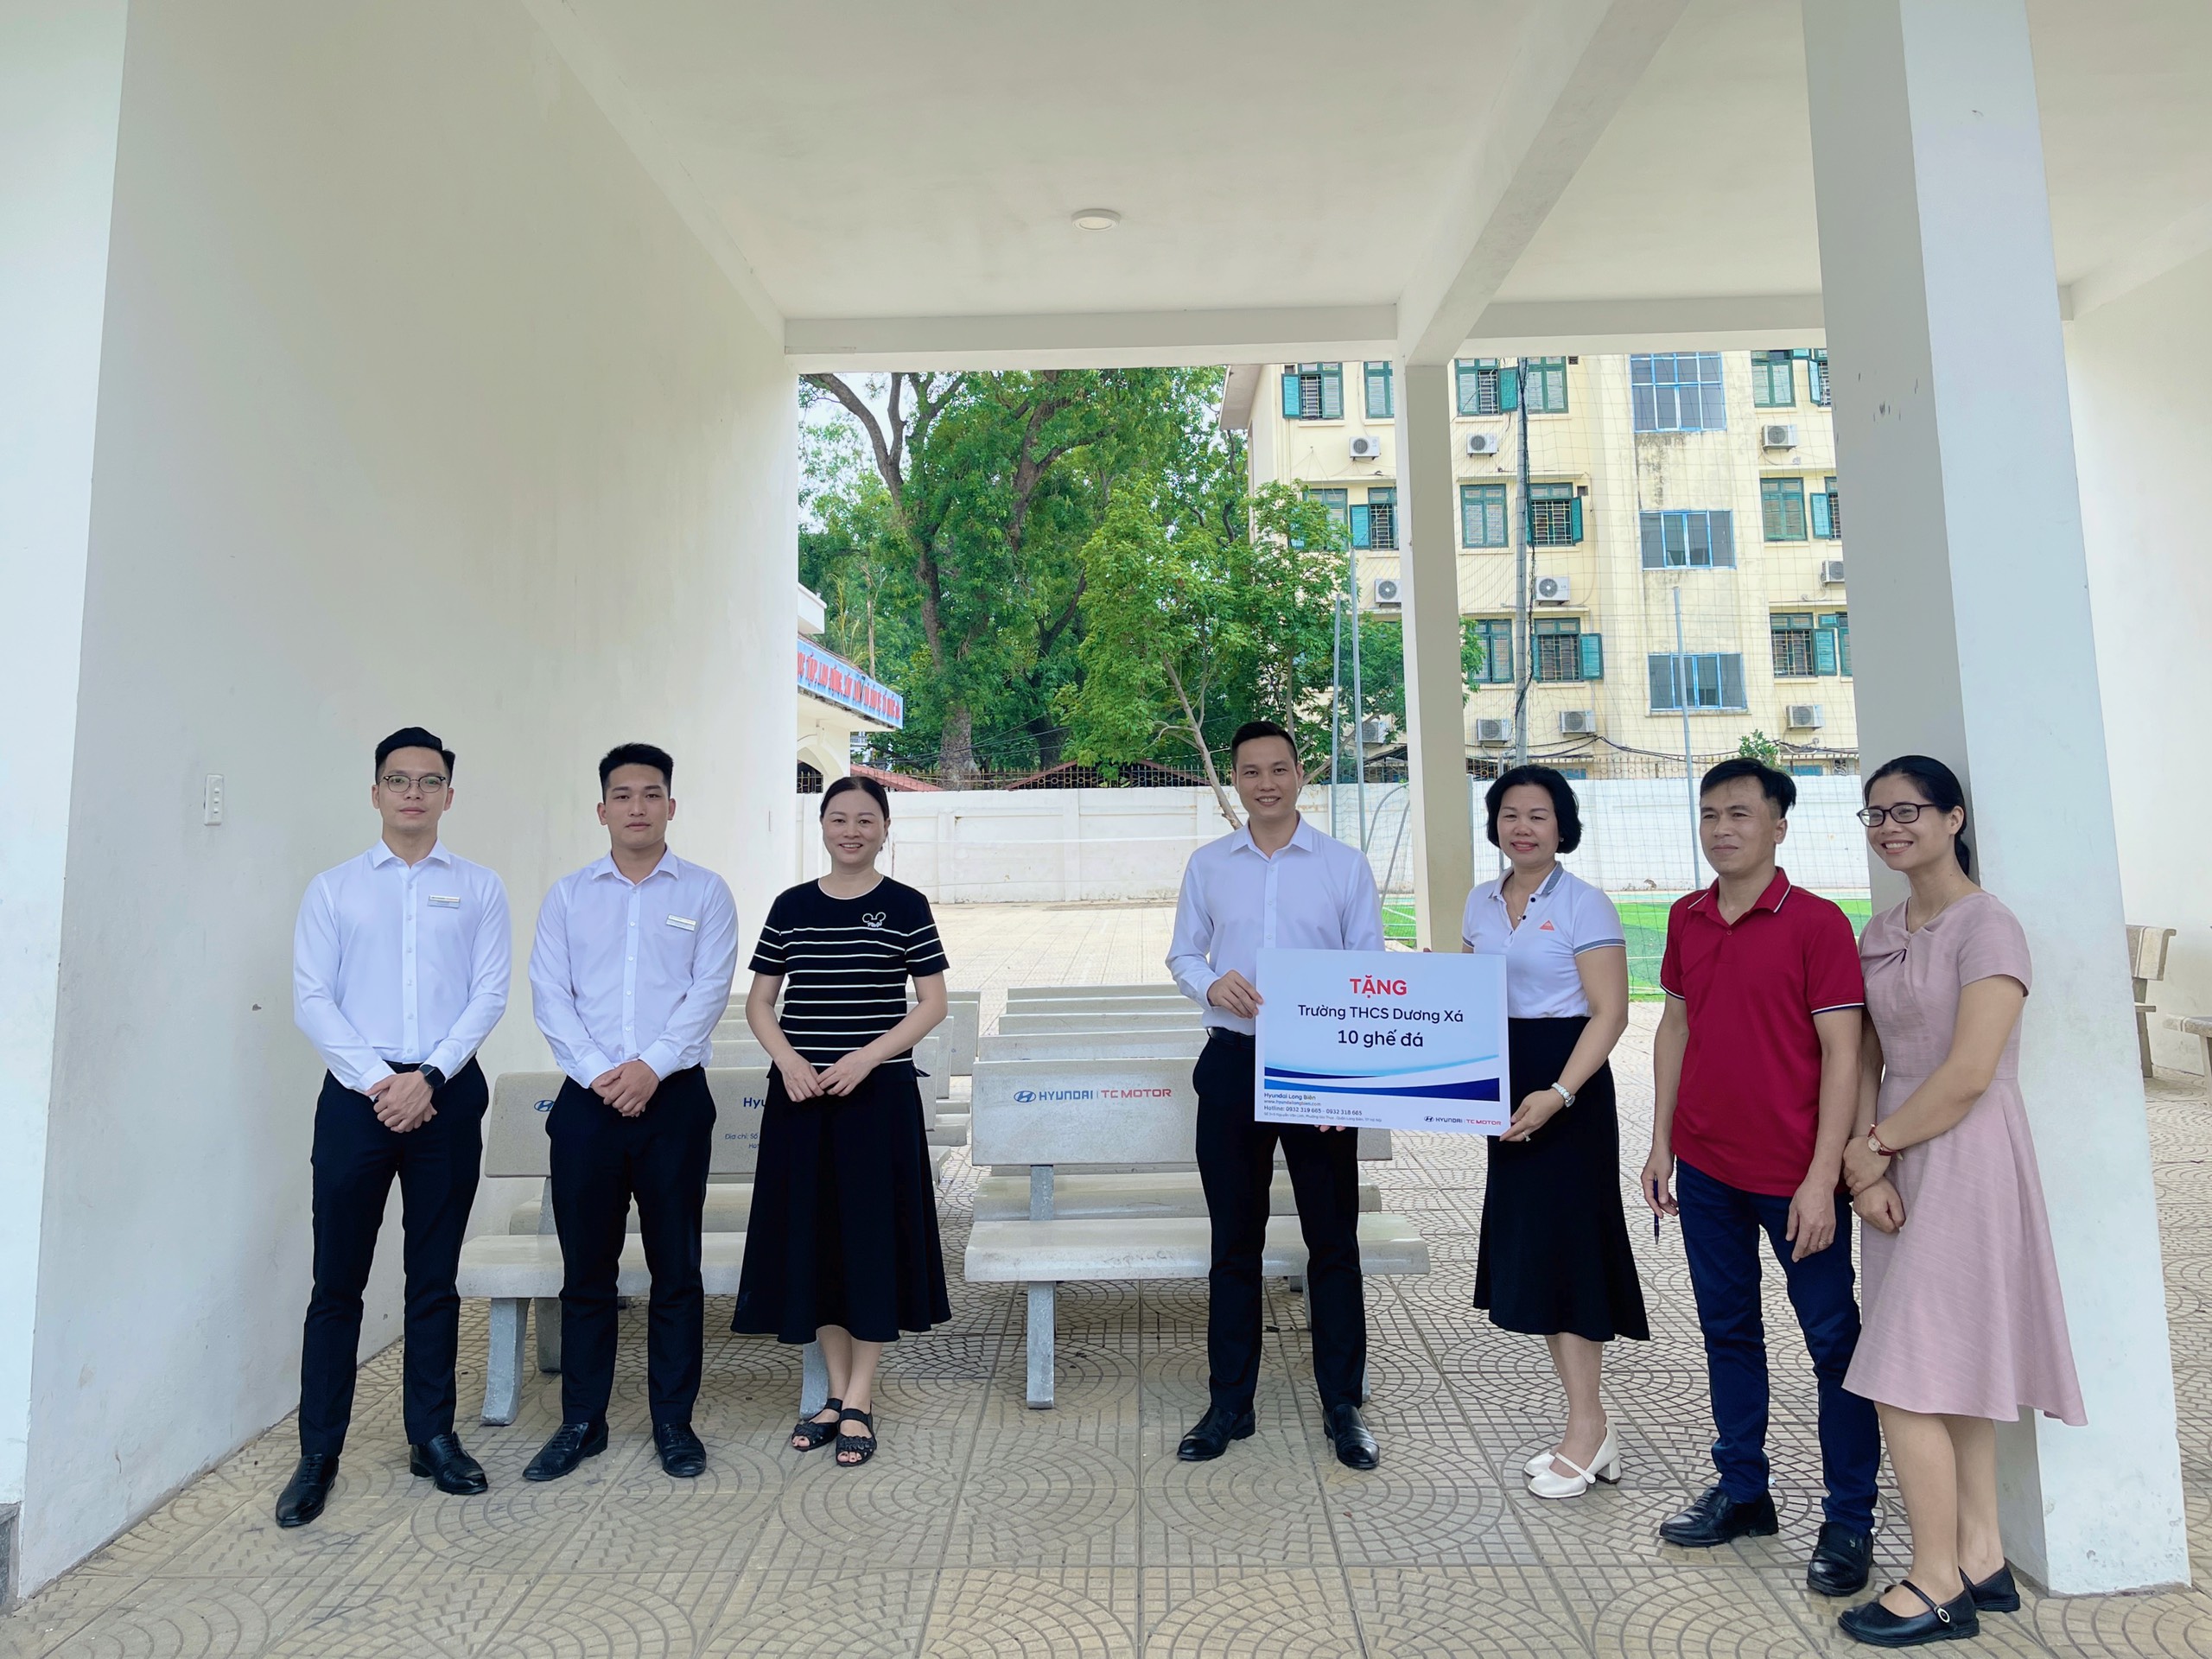 Xã hội - Hyundai Long Biên trao tặng ghế đá cho trường THCS Dương Xá (Hình 4).